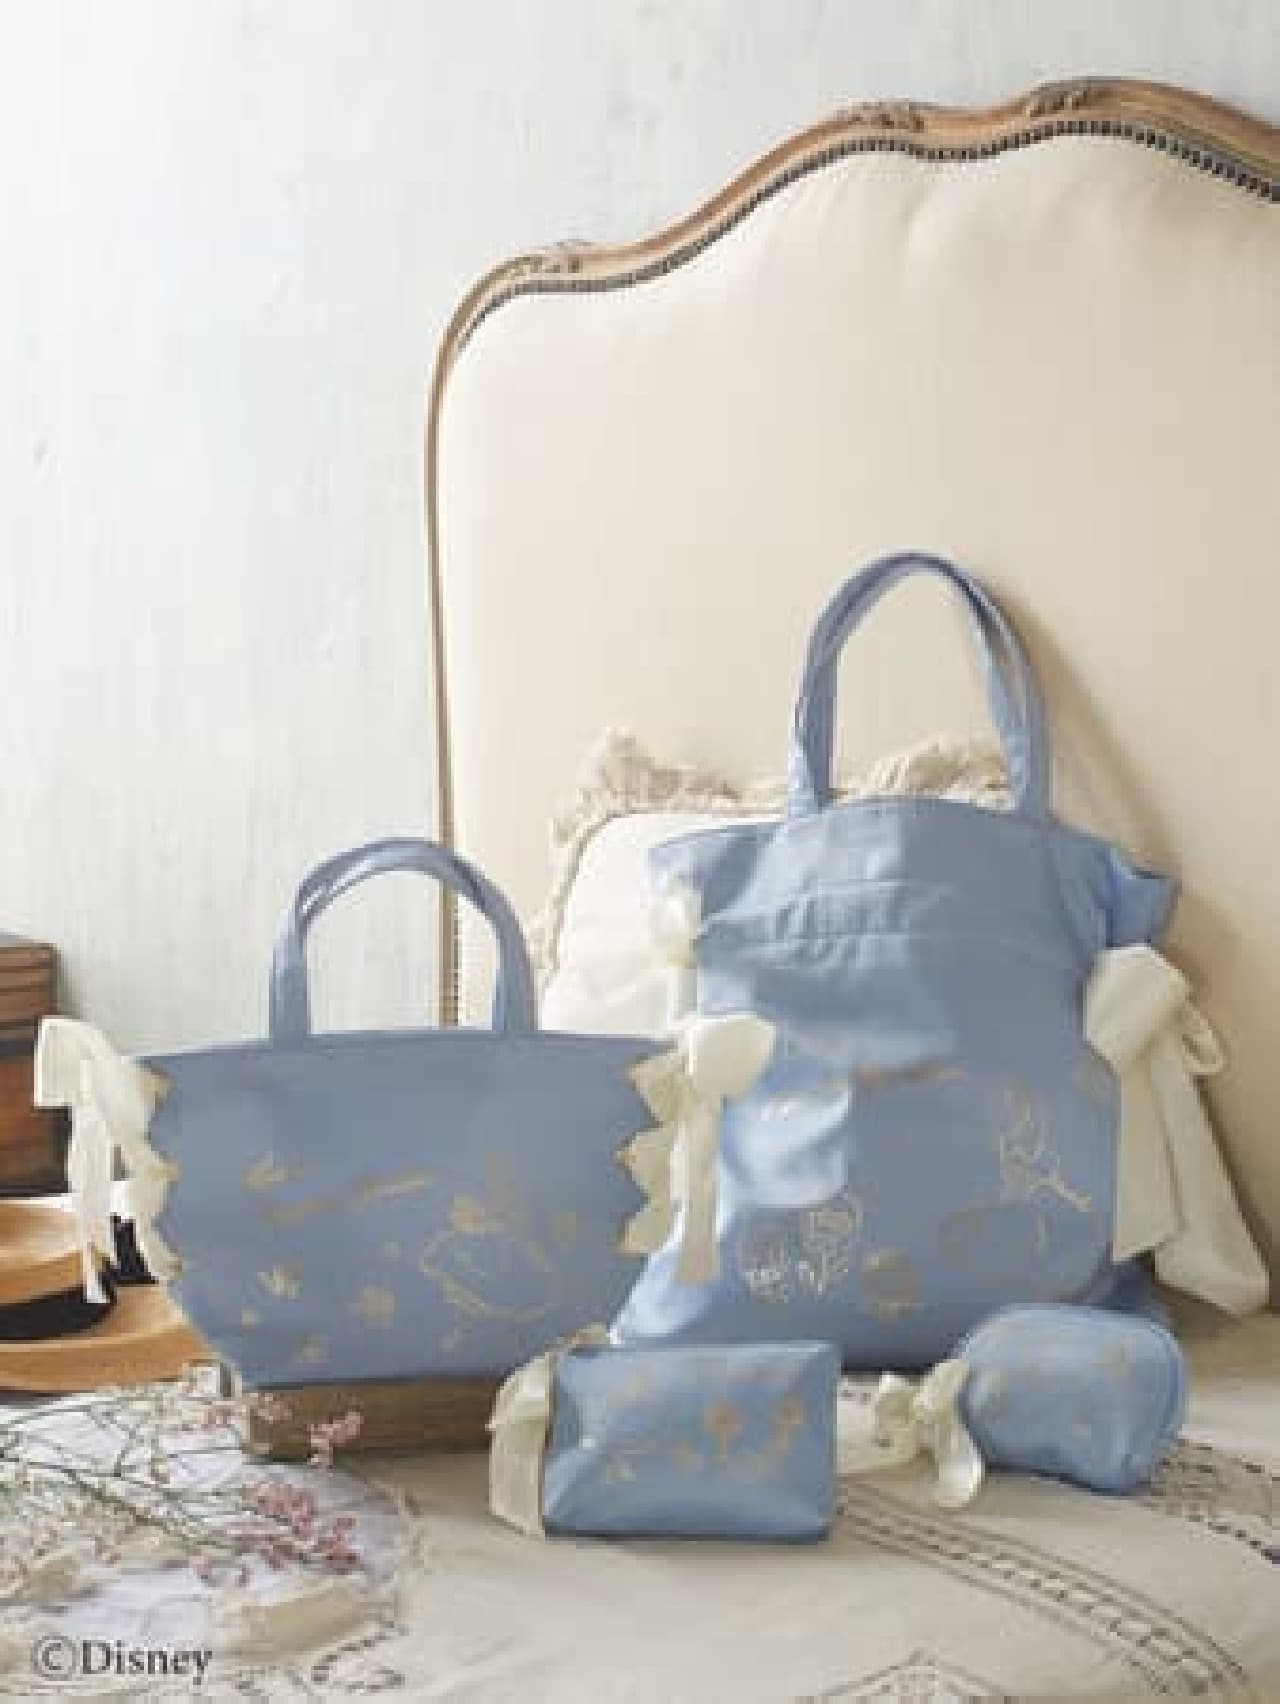 Maison de FLEUR "Disney Wonderland Alice" Collection 2nd --Blue & White Tote Bags, etc.